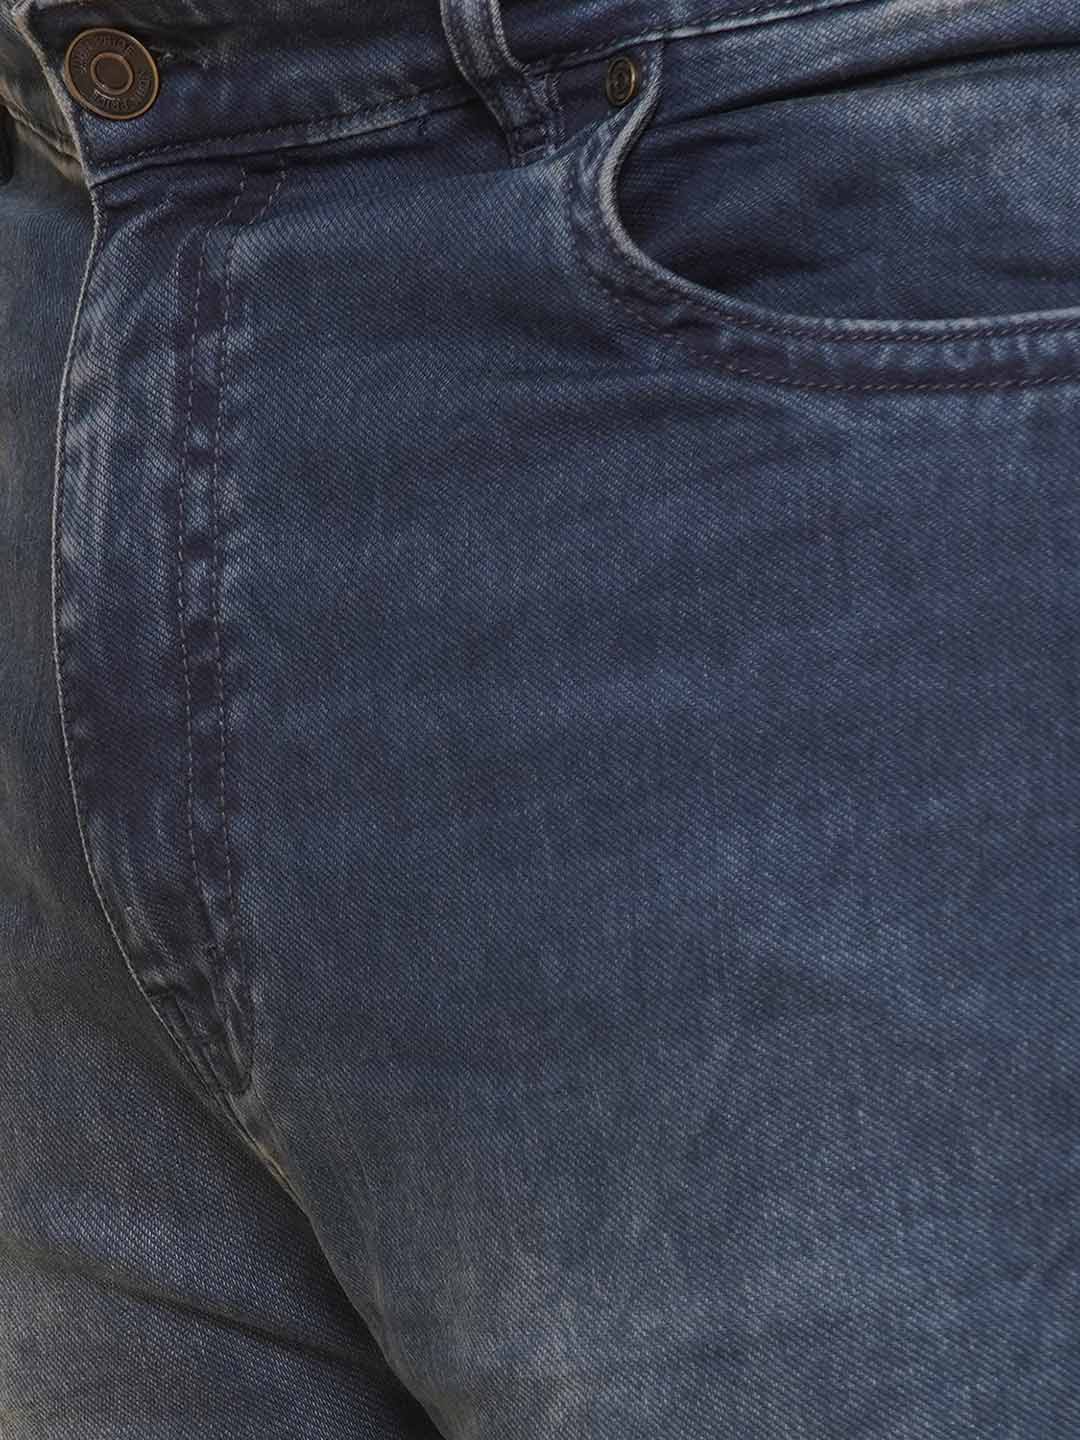 bottomwear/jeans/JPJ12424/jpj12424-2.jpg